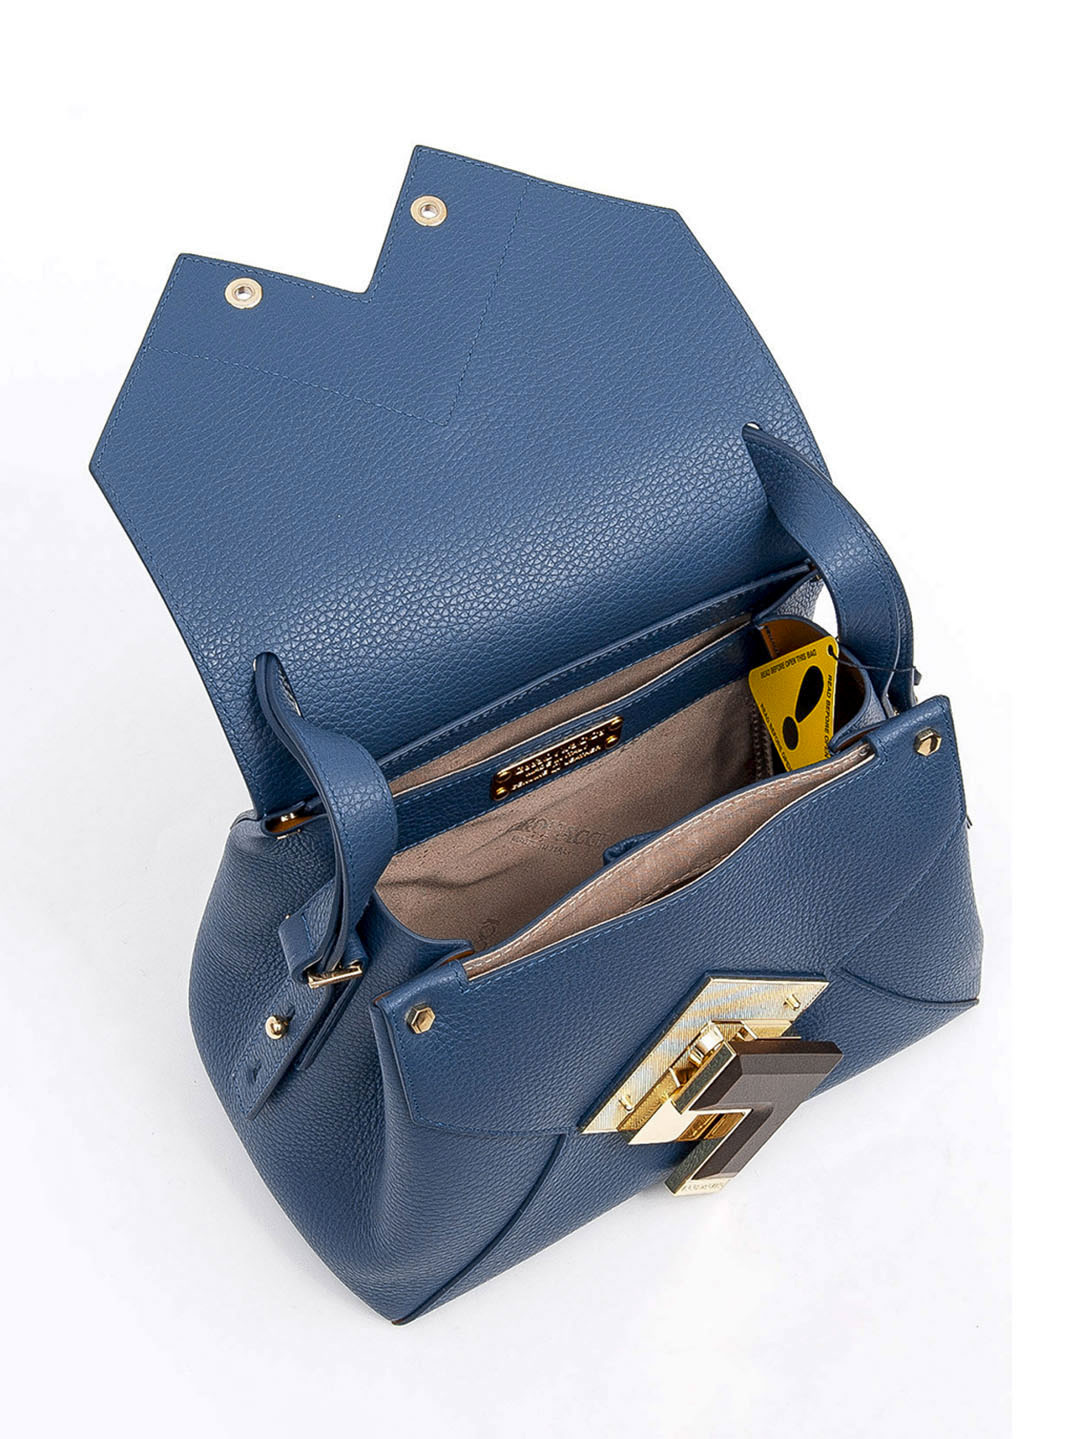 Фото Женская сумка из мягкой премиальной кожи с декором из натурального дерева Классические сумки